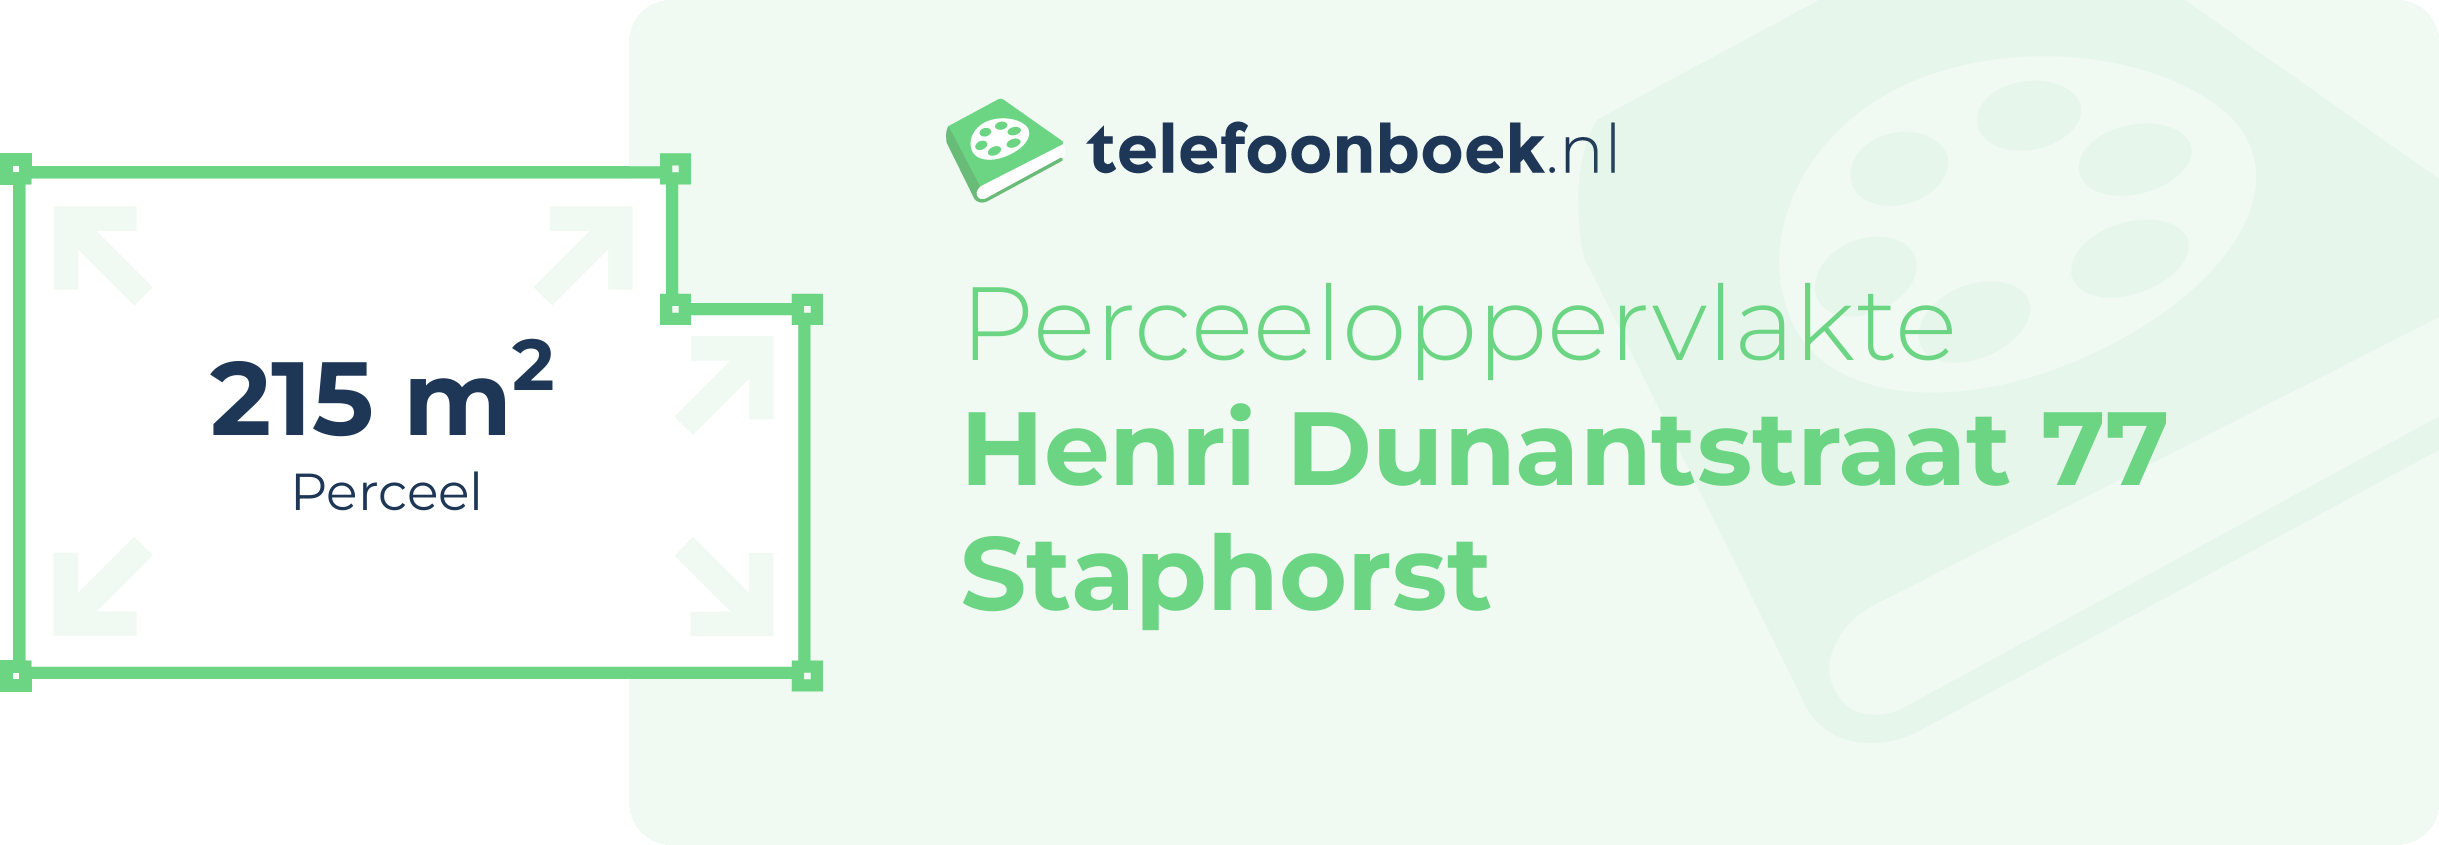 Perceeloppervlakte Henri Dunantstraat 77 Staphorst